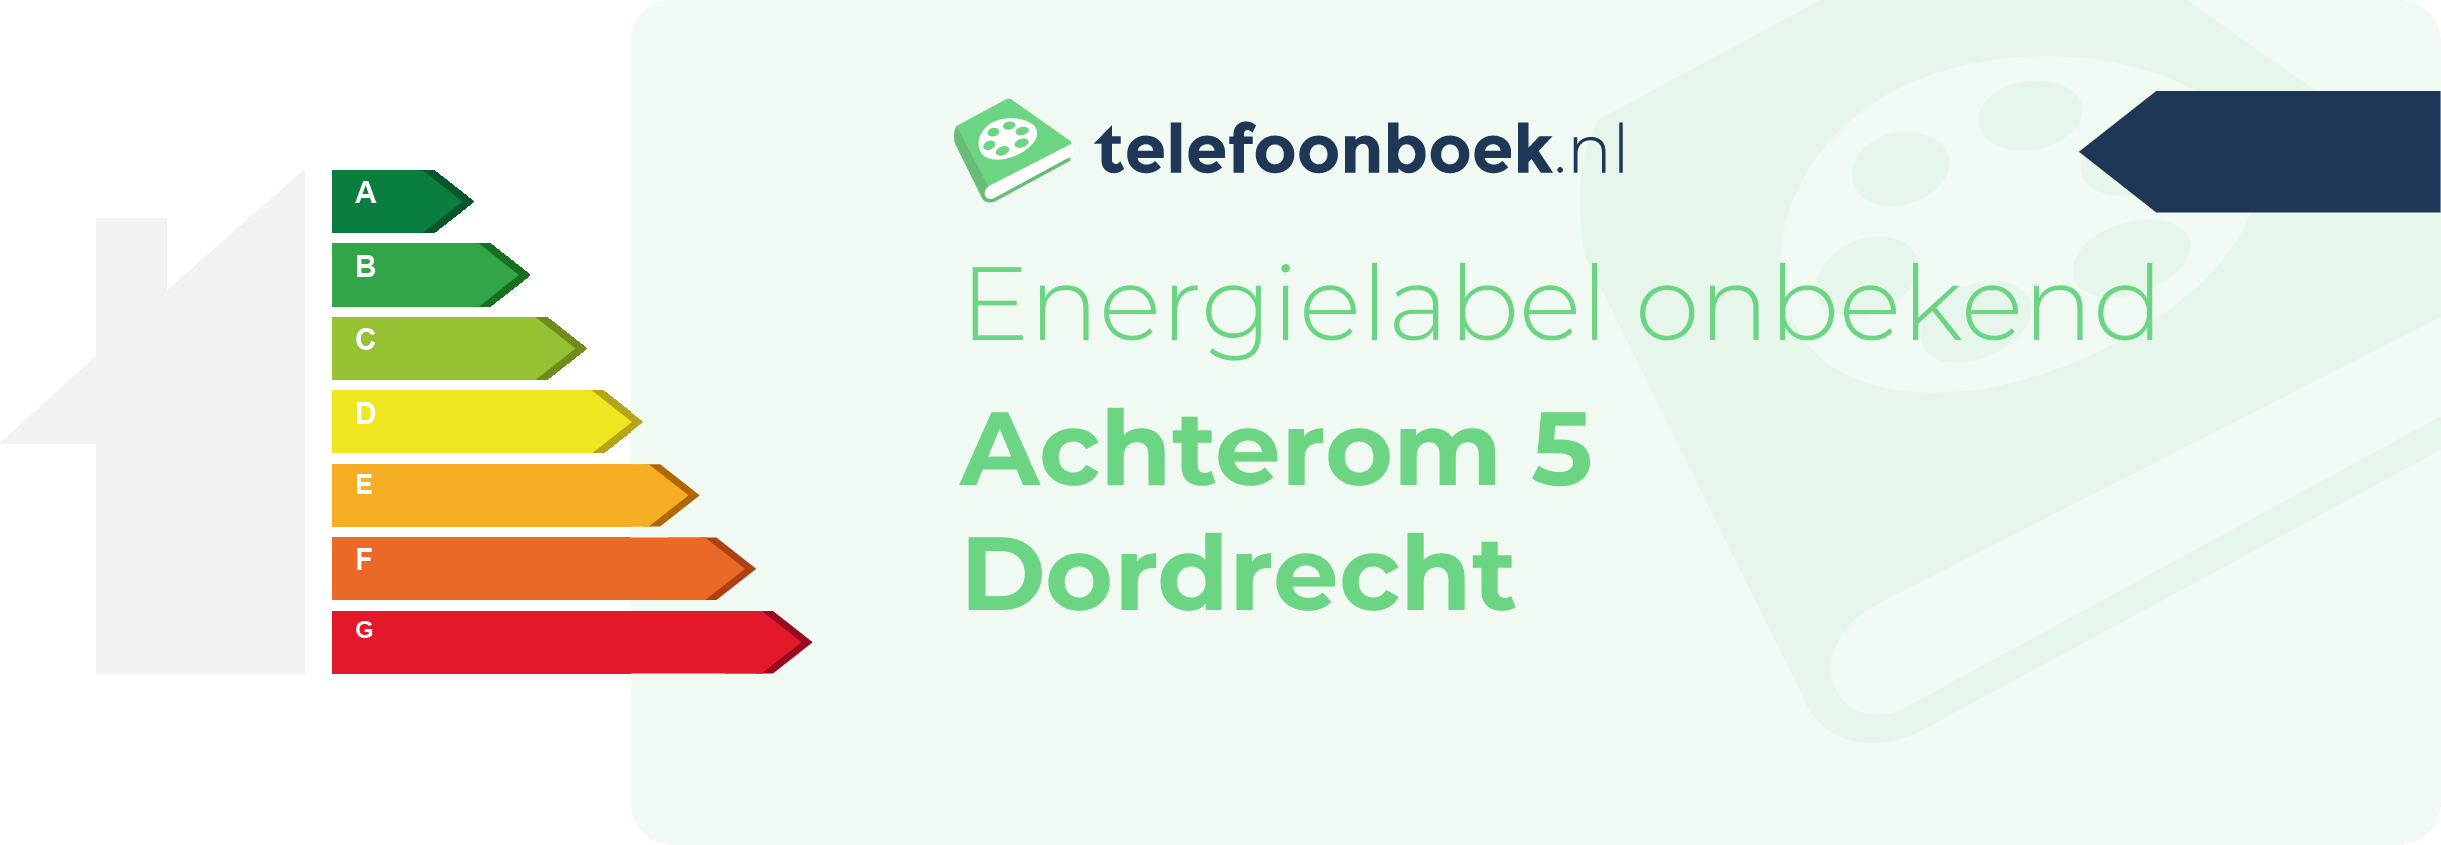 Energielabel Achterom 5 Dordrecht